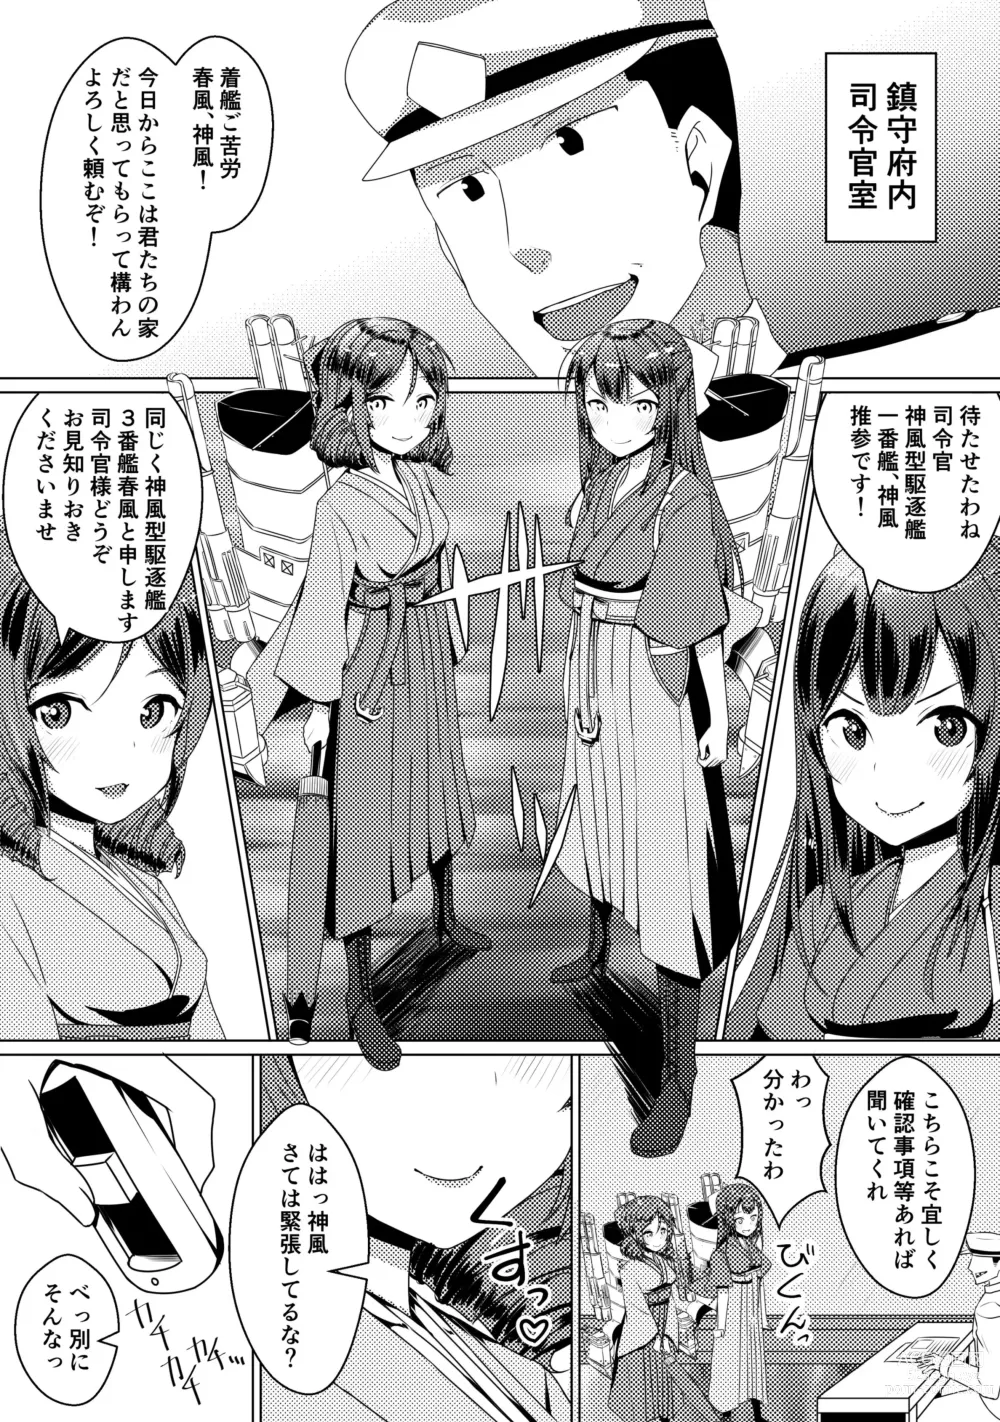 Page 3 of doujinshi Shimaikan ni Yoku aru Koto